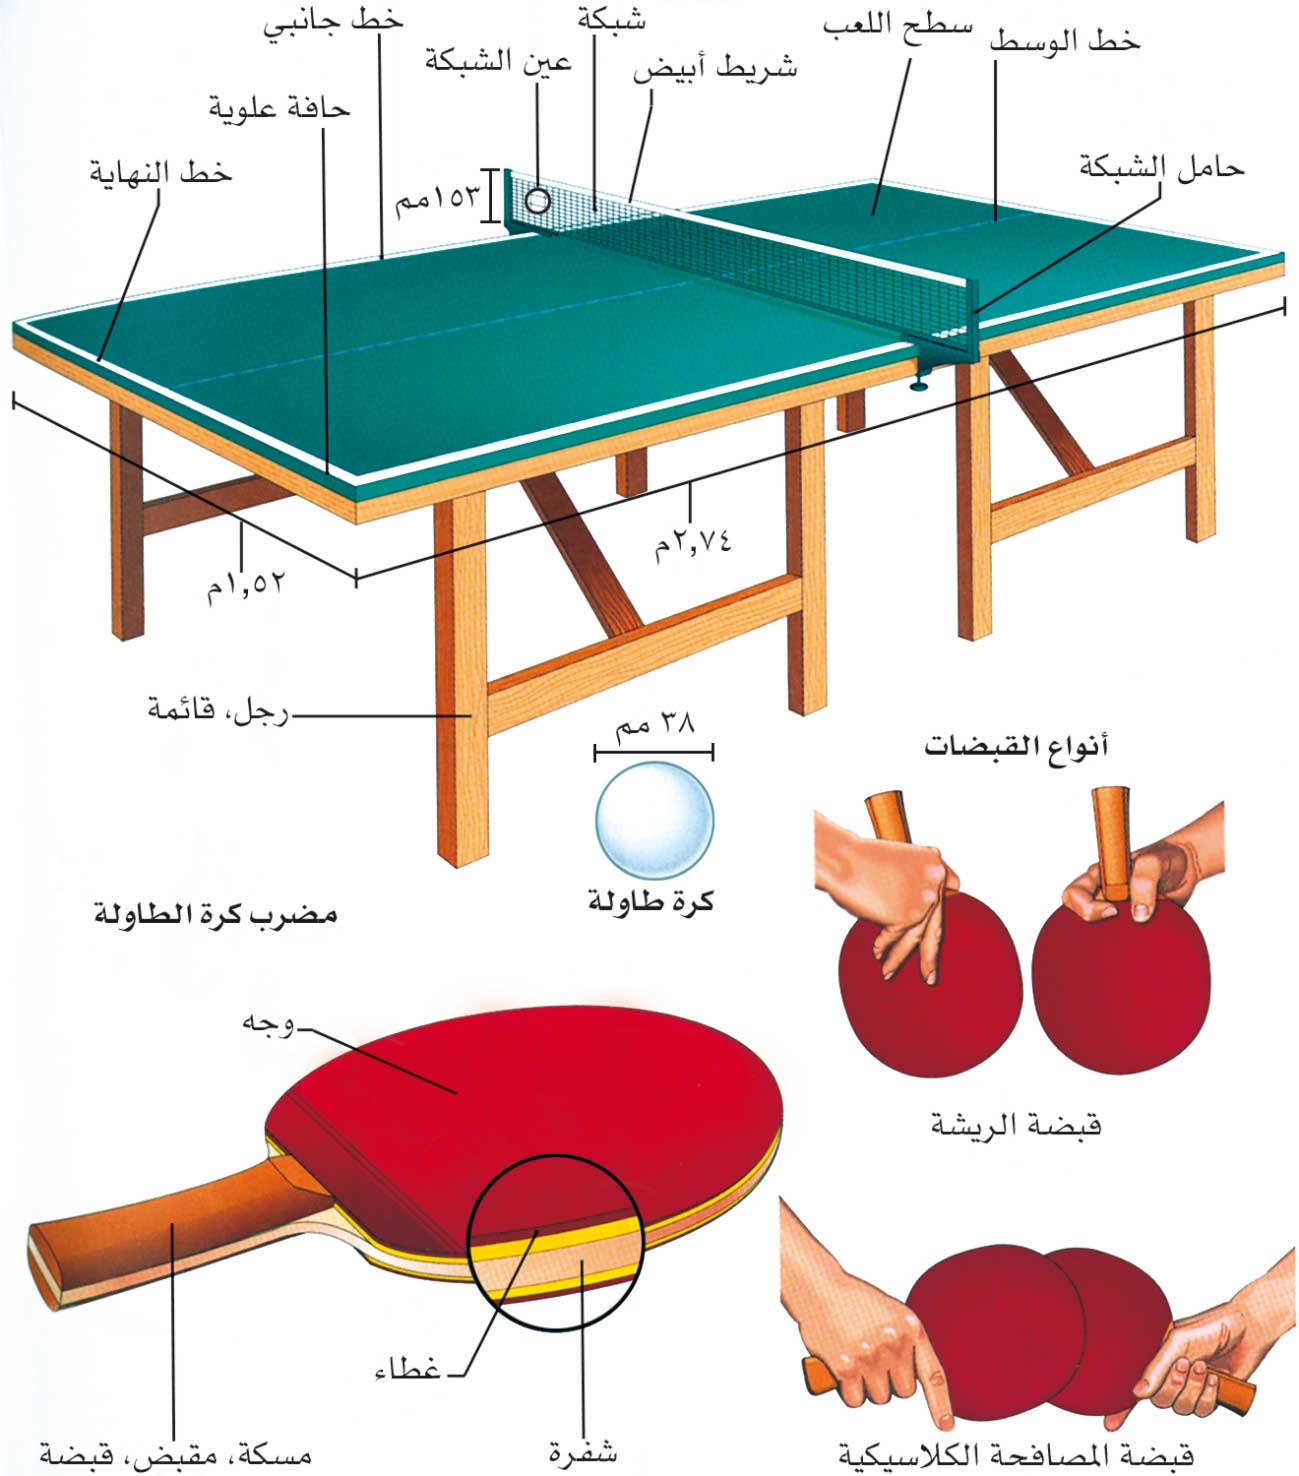 الموسوعة العربية | كرة الطاولة